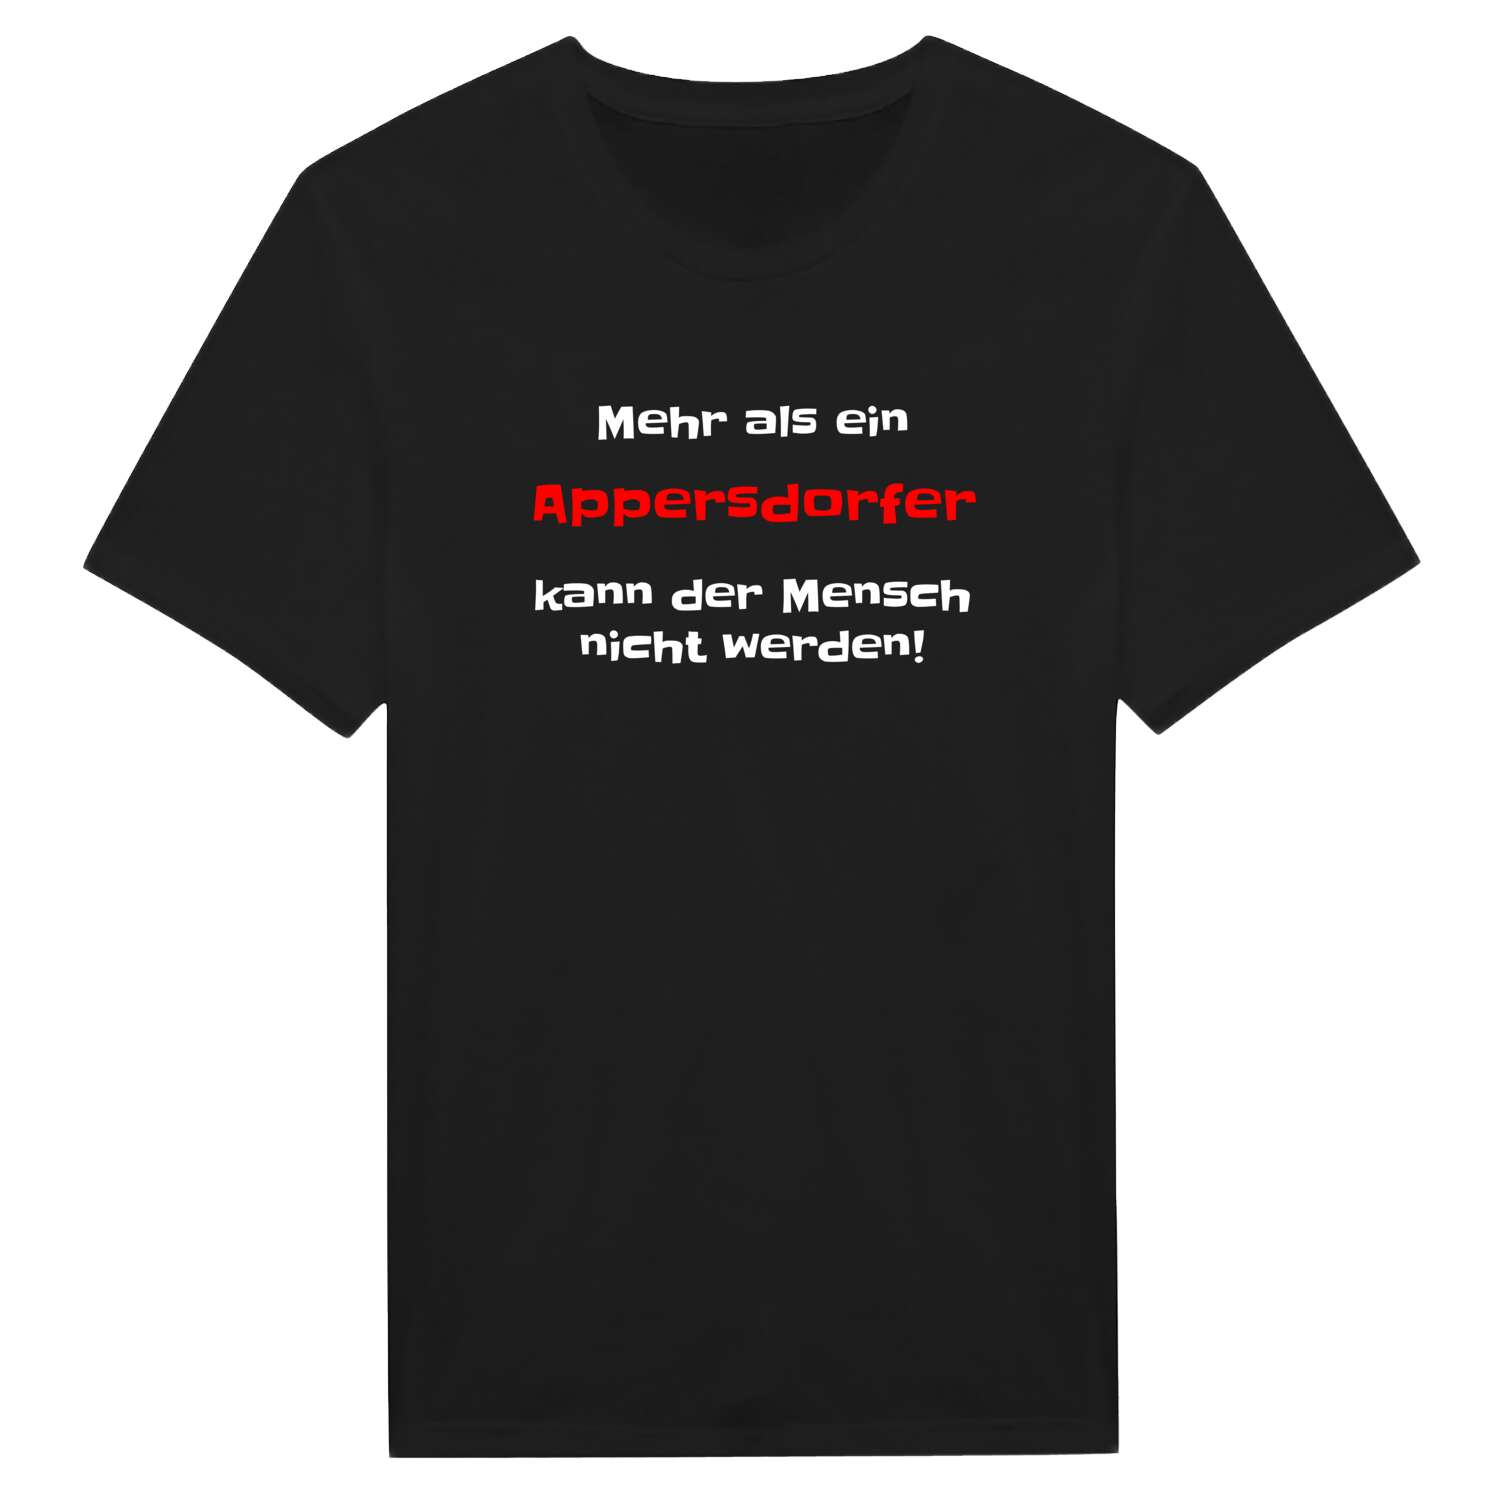 Appersdorf T-Shirt »Mehr als ein«